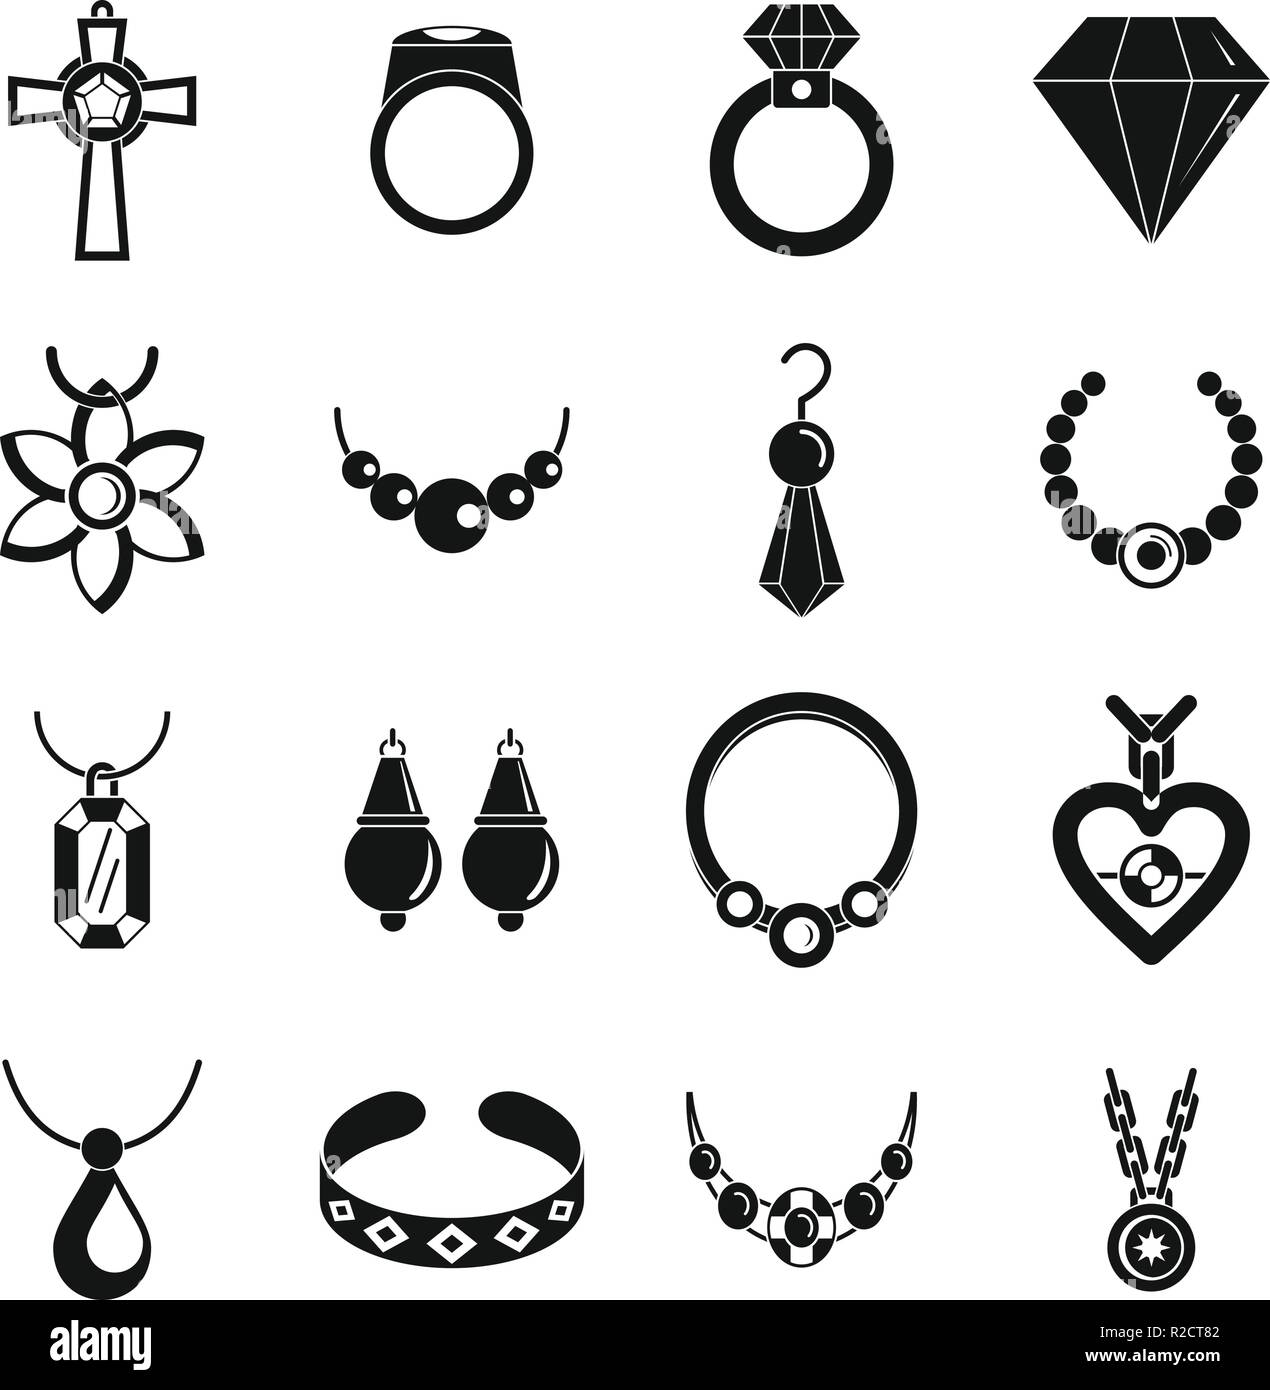 Bijoux de luxe collier icons set. Illustration Simple de Luxe Collier  bijoux 16 icônes vectorielles pour le web Image Vectorielle Stock - Alamy